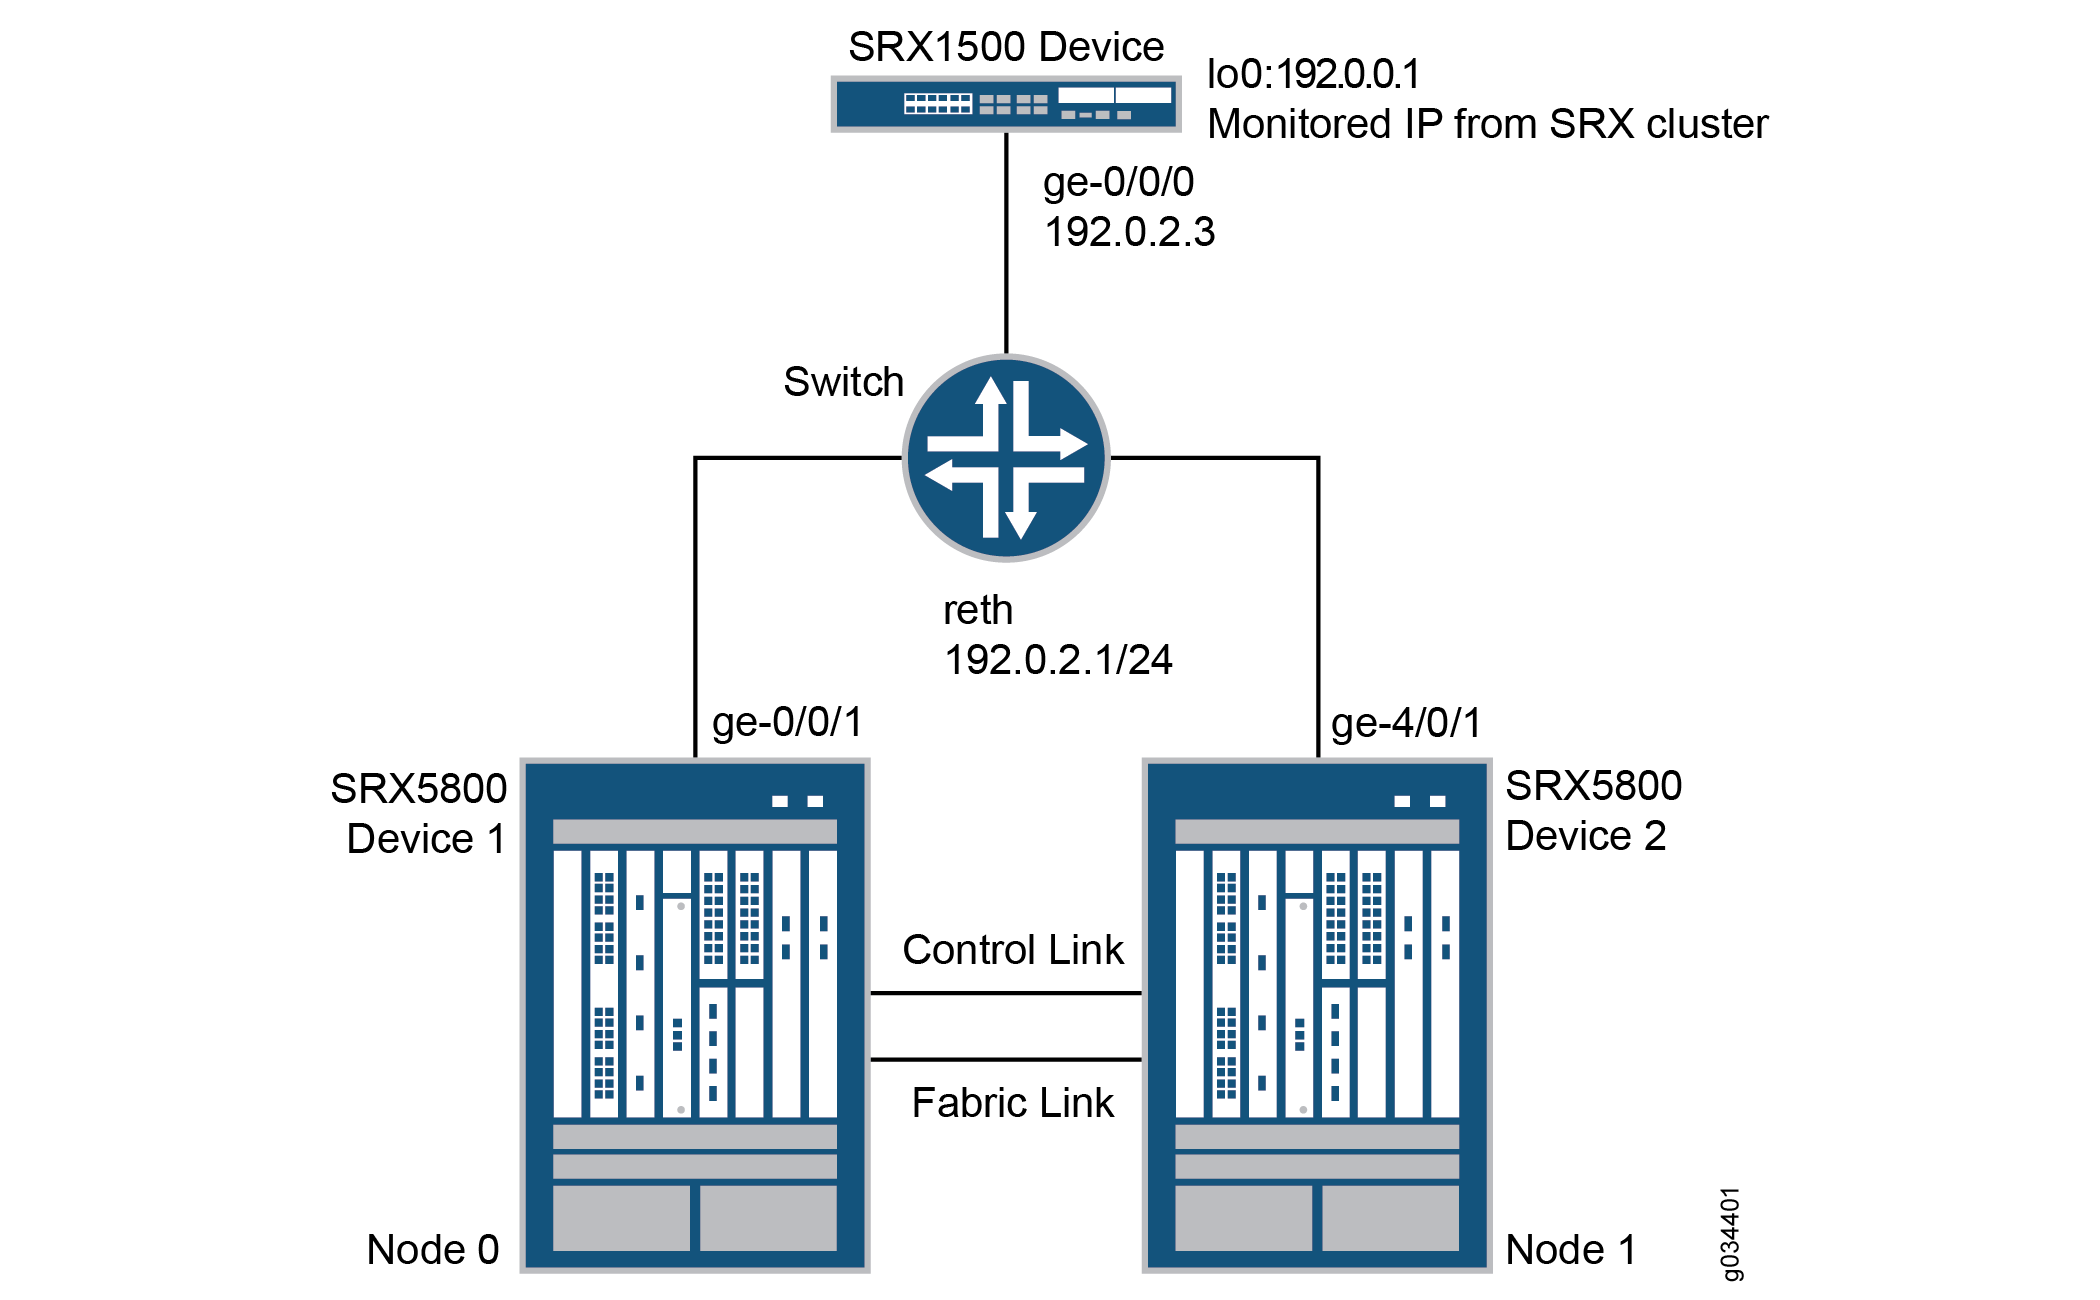 Ejemplo de monitoreo de IP en una topología de dispositivo de la serie SRX